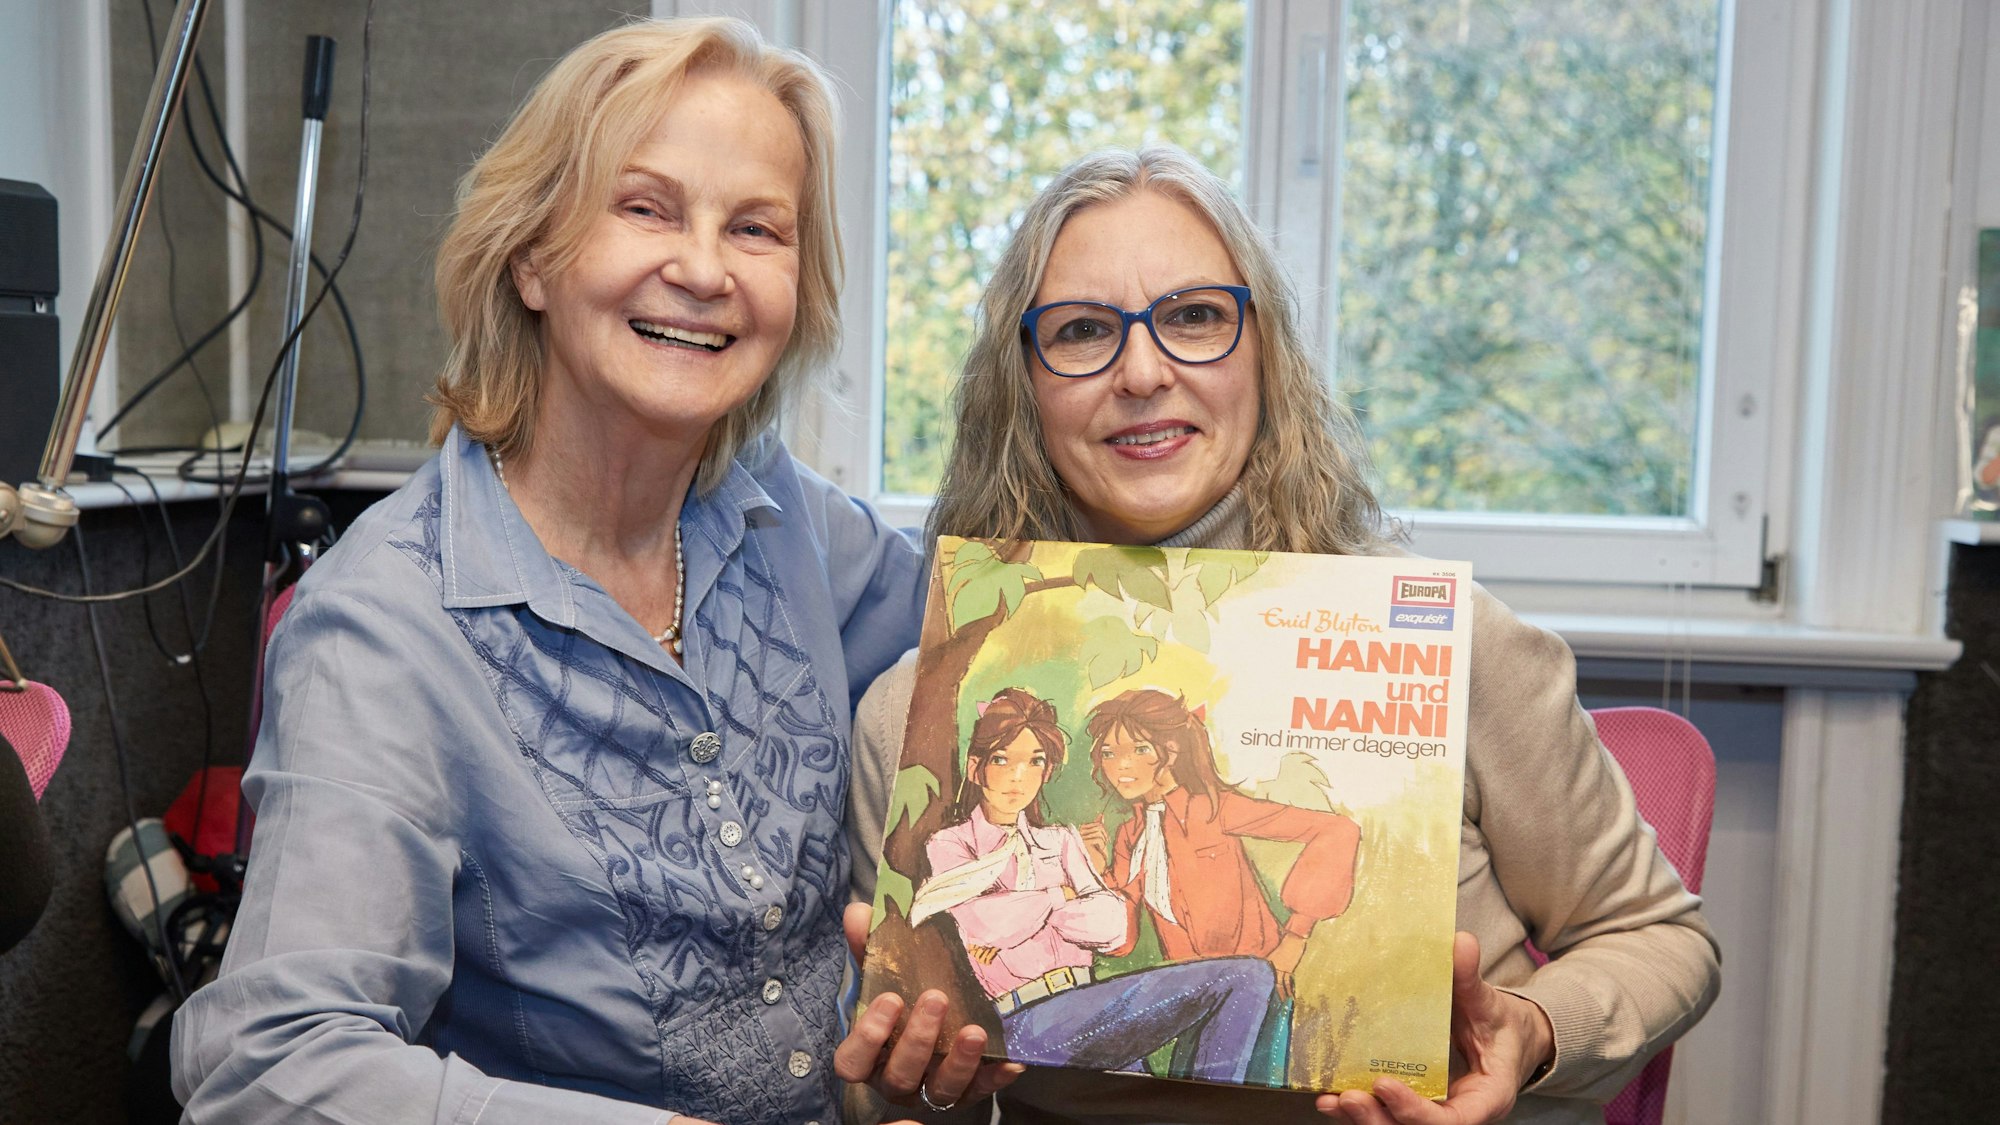 Heikedine Körting (l), Produzentin, und Manuela Dahm, Sprecherin, sitzen während eines Fototermins zu 50 Jahre „Hanni und Nanni“-Hörspiele im Tonstudio am Rothenbaum. Sie halten die erste Platte „Hanni und Nanni sind immer dagegen“ in den Händen